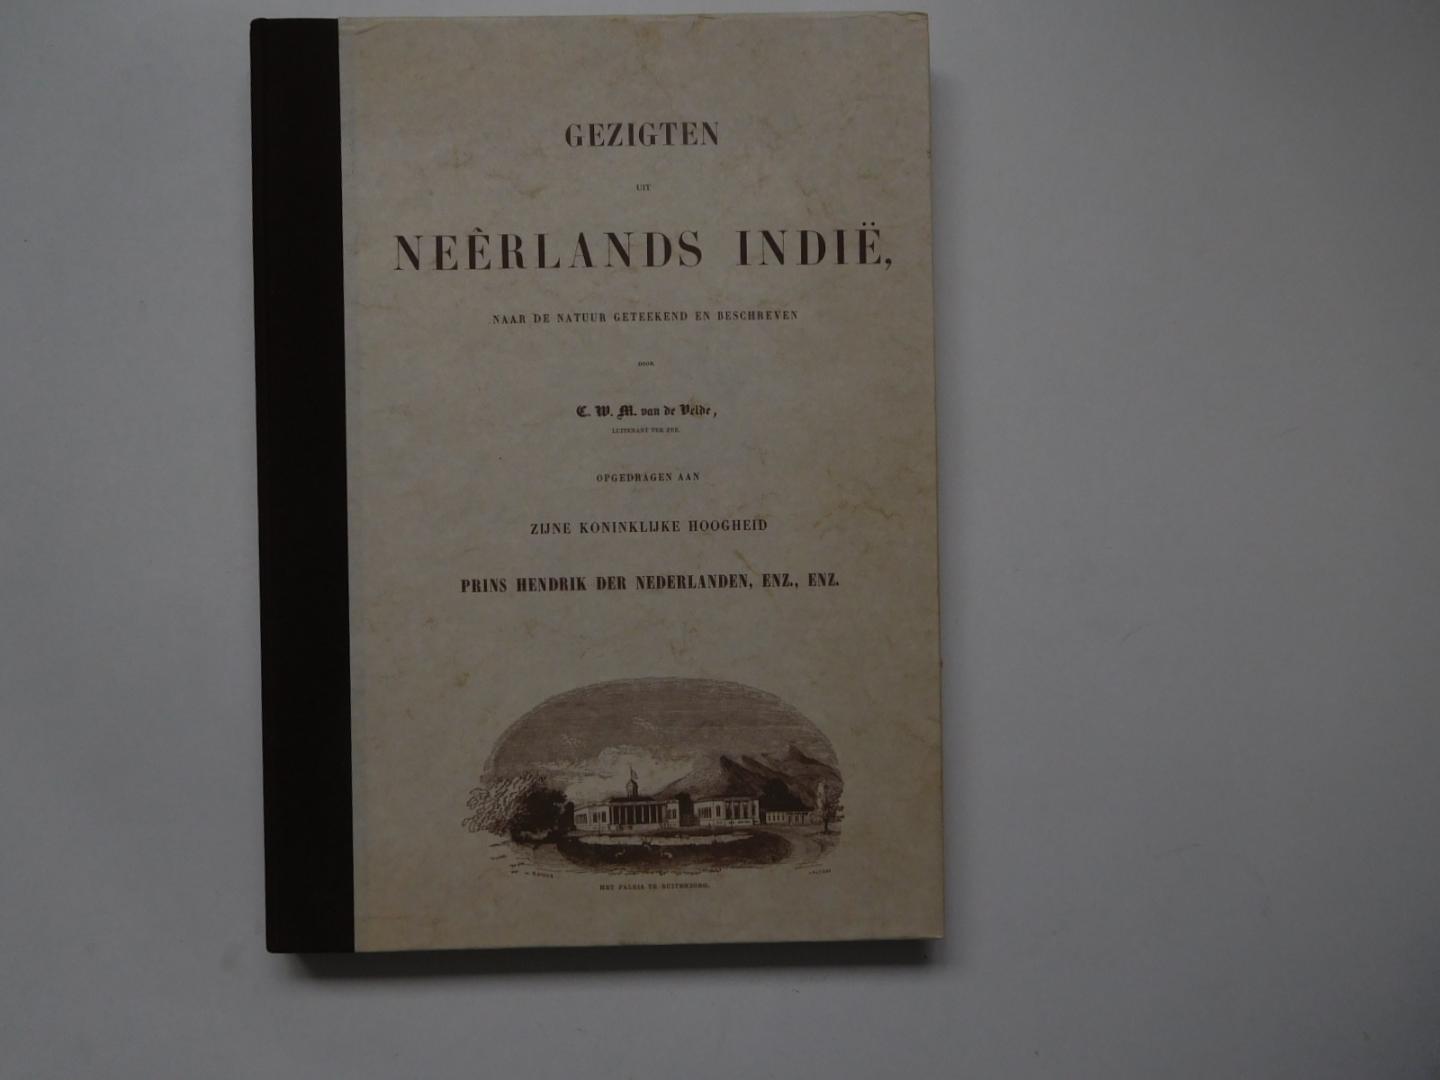 Velde, C.W.M. - Gezigten uit Neèrlands-Indië. Opgedragen aan Zijne Koninklijke Hoogheid Prins Hendrik der Nederlanden, enz., enz.